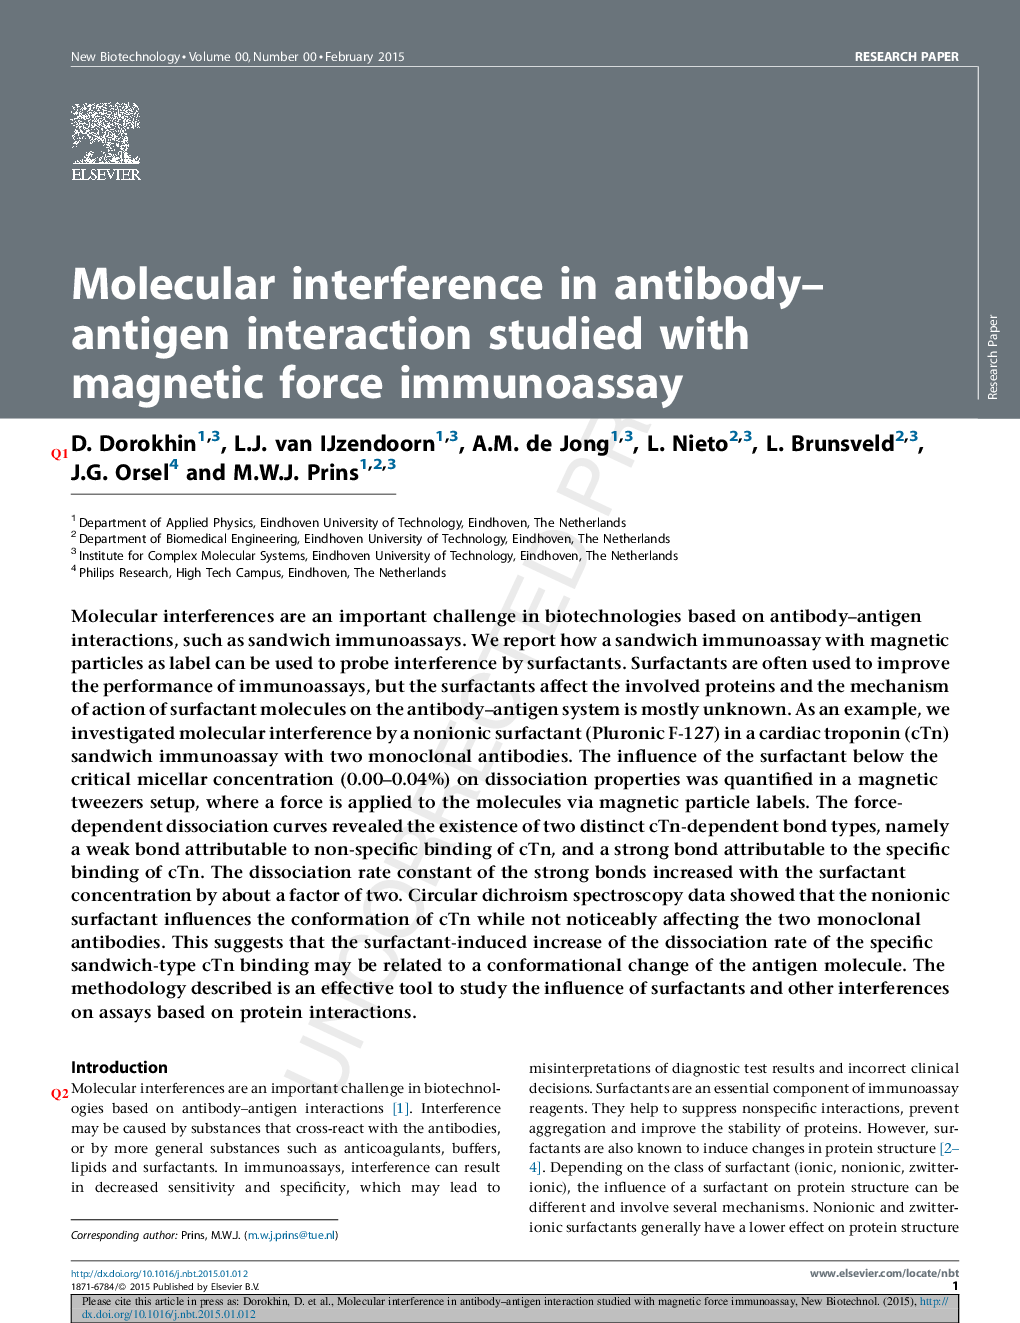 تداخل مولکولی در تعامل آنتی بادی-آنتی ژن با ایمنی آزمایش نیروی مغناطیسی مورد مطالعه قرار گرفت 